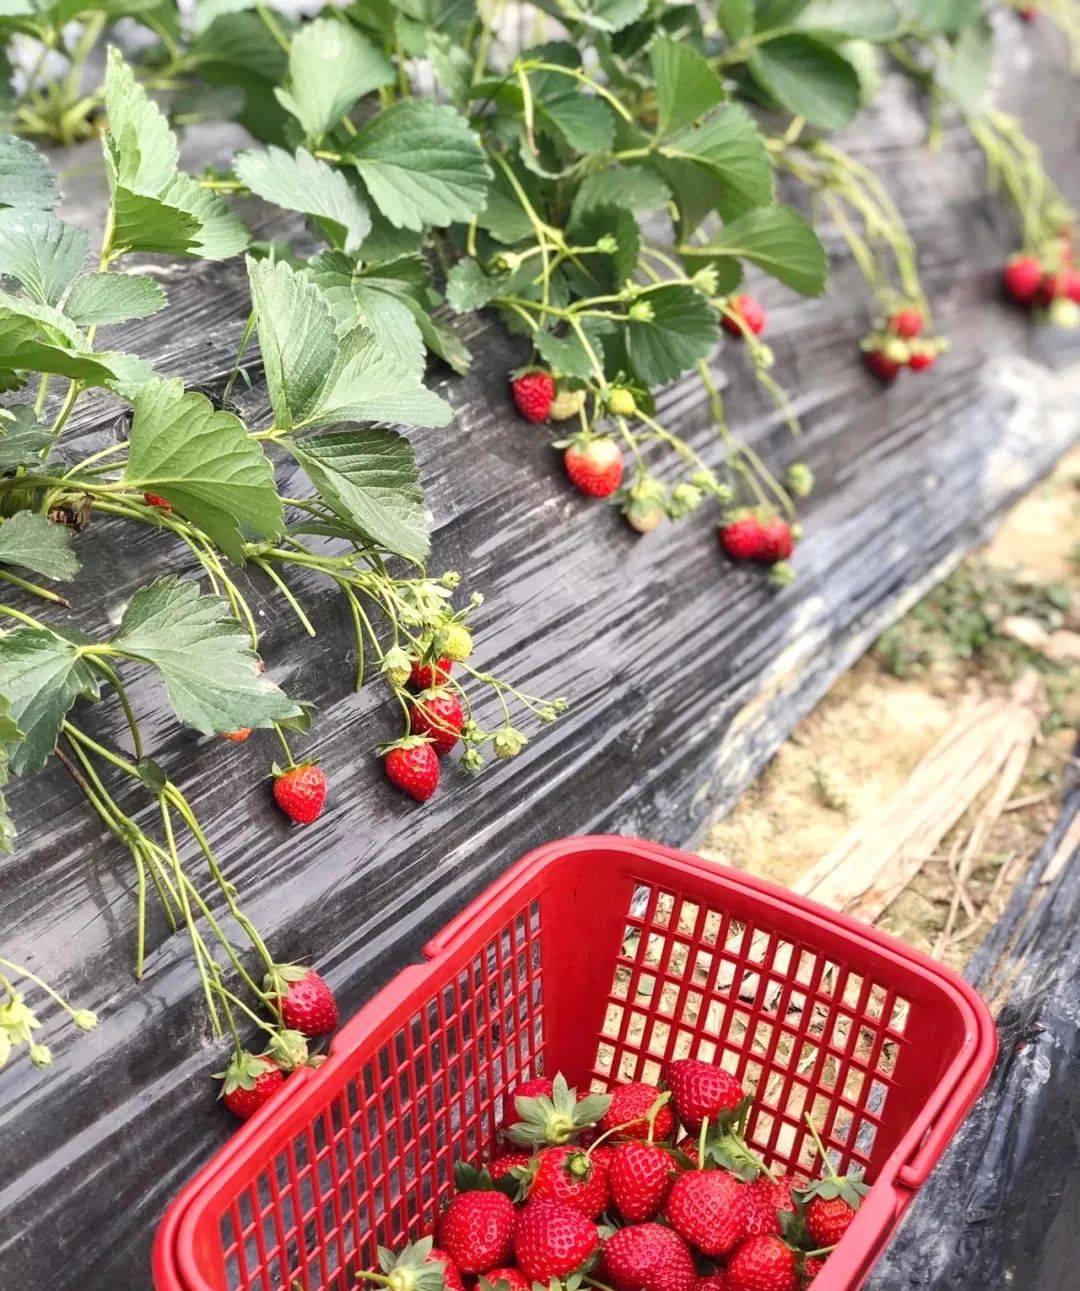 深圳各区不完全摘草莓指南,最低30元一斤!